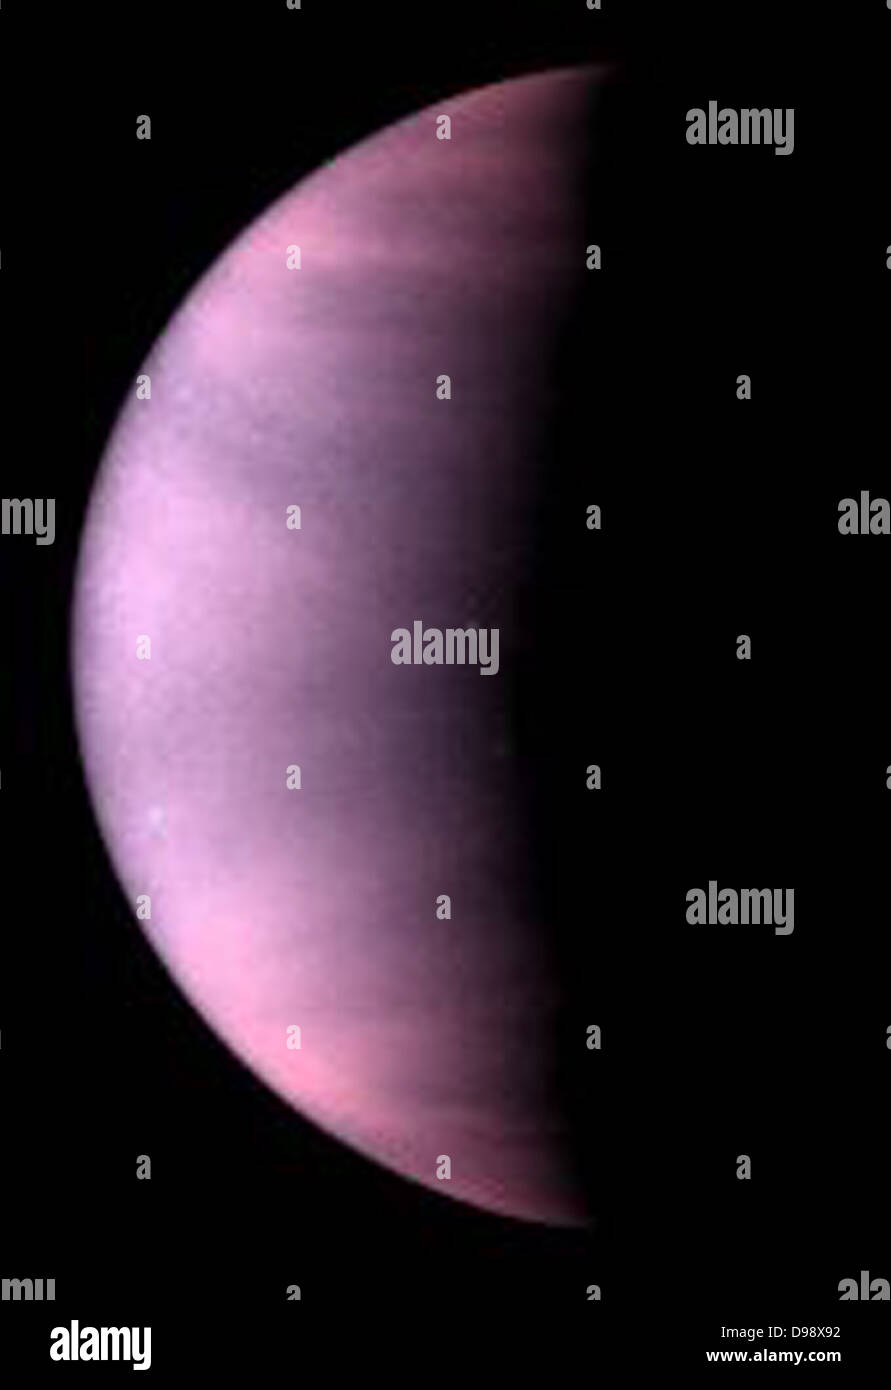 Venere Cloud Tops visualizzati da Hubble. Si tratta di una la NASA Telescopio Spaziale Hubble della luce ultravioletta immagine del pianeta Venere, adottate il 24 gennaio 1995, Quando Venere era a una distanza di 70,6 milioni di miglia (113,6 milioni di chilometri dalla Terra. Venere è coperto di nuvole fatte di acido solforico, piuttosto che l'acqua-nubi di vapore sulla terra. Queste nubi permanentemente sindone Venere superficie vulcanica, che è stato mappato del radar dalla navicella spaziale e da terra-basato telescopio. Foto Stock